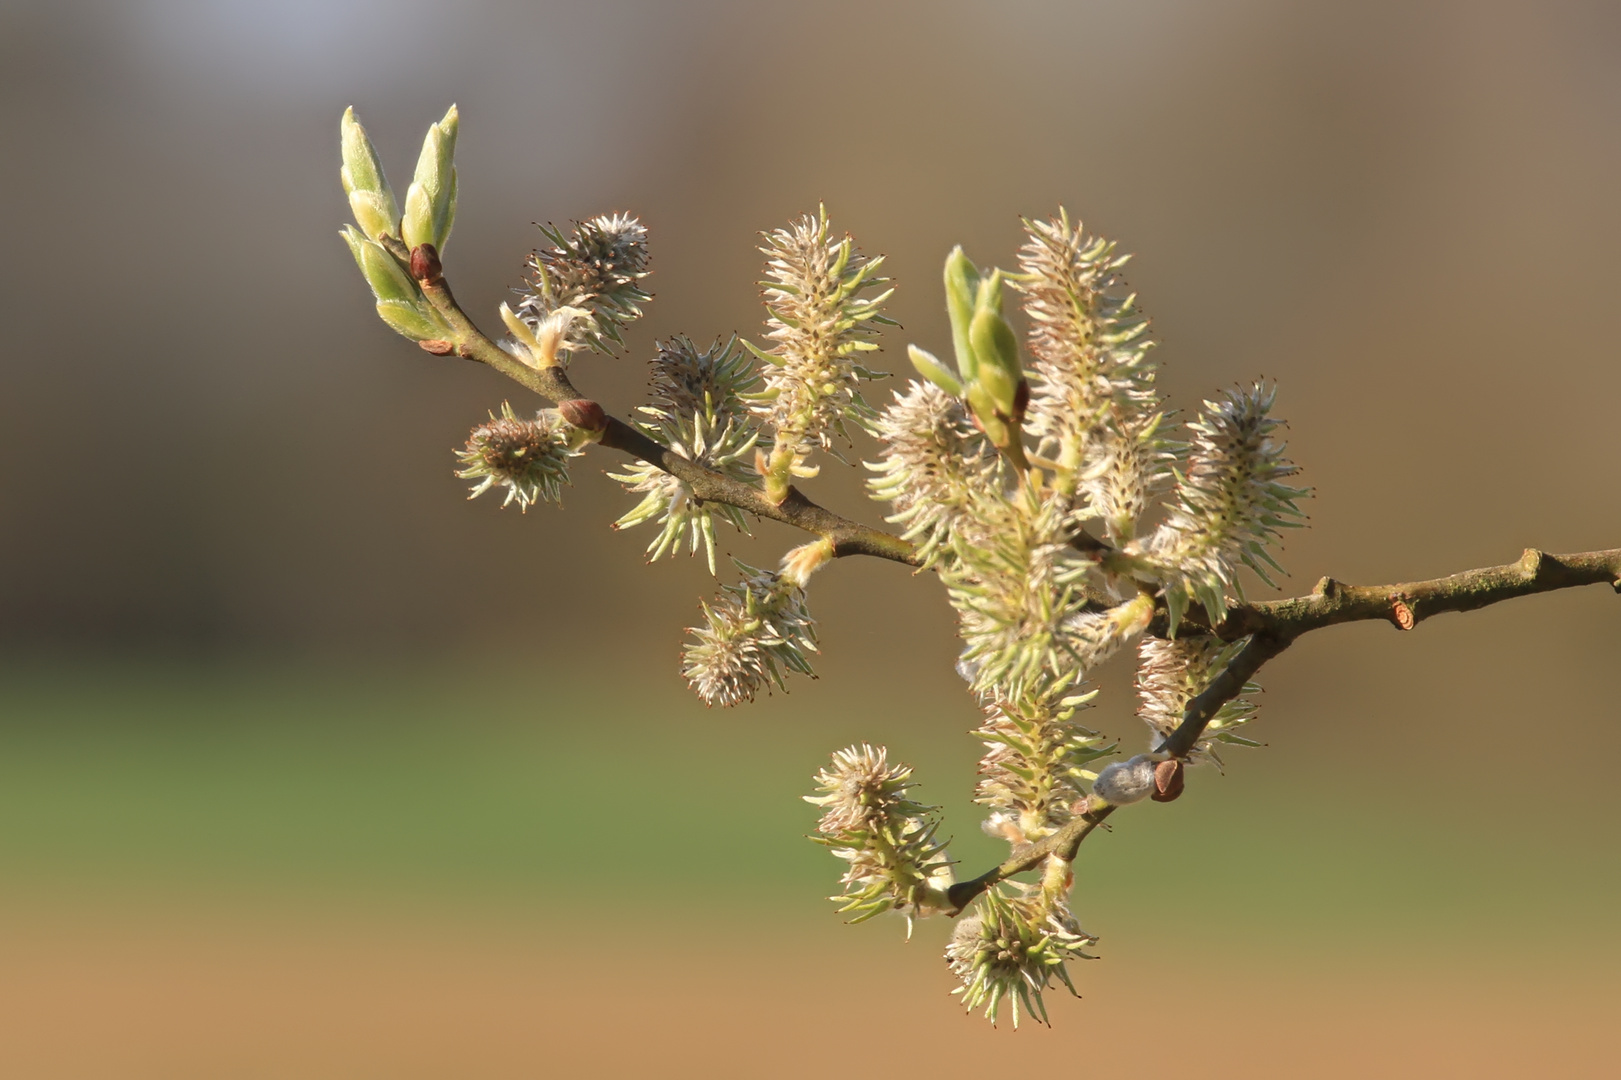 blühende und austreibende Weide II  -  blooming and sprouting willow II